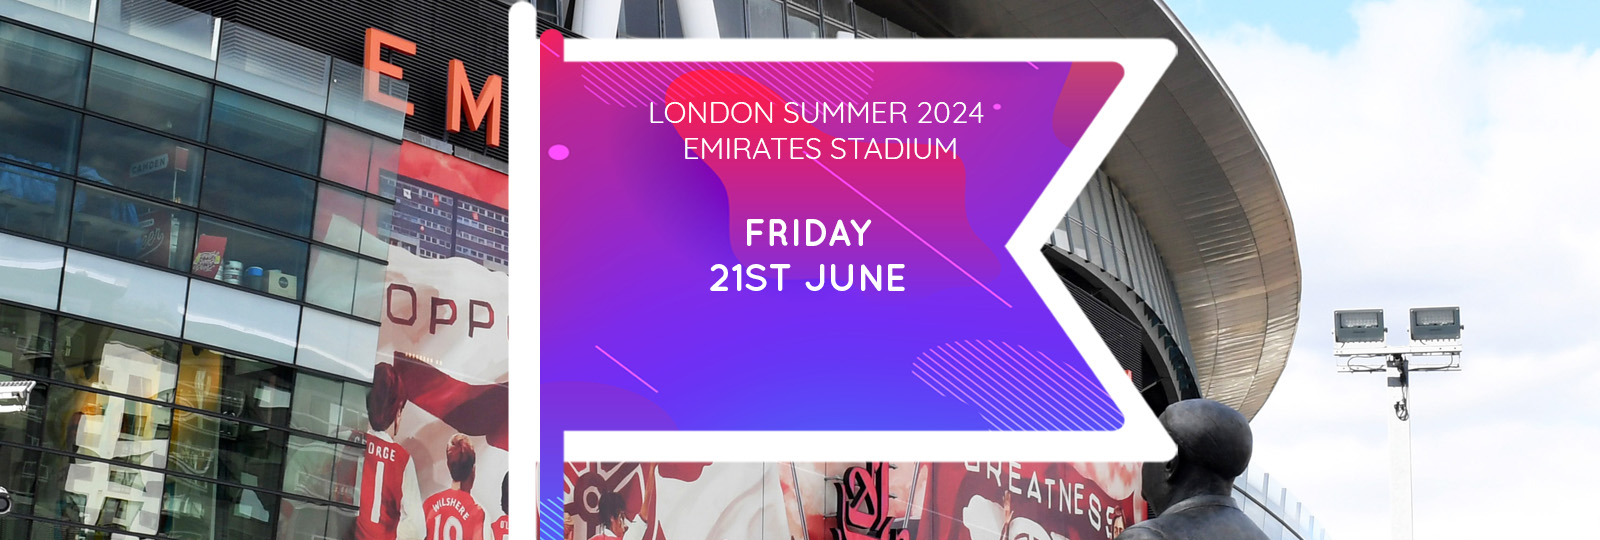 London Summer 2024 Fair